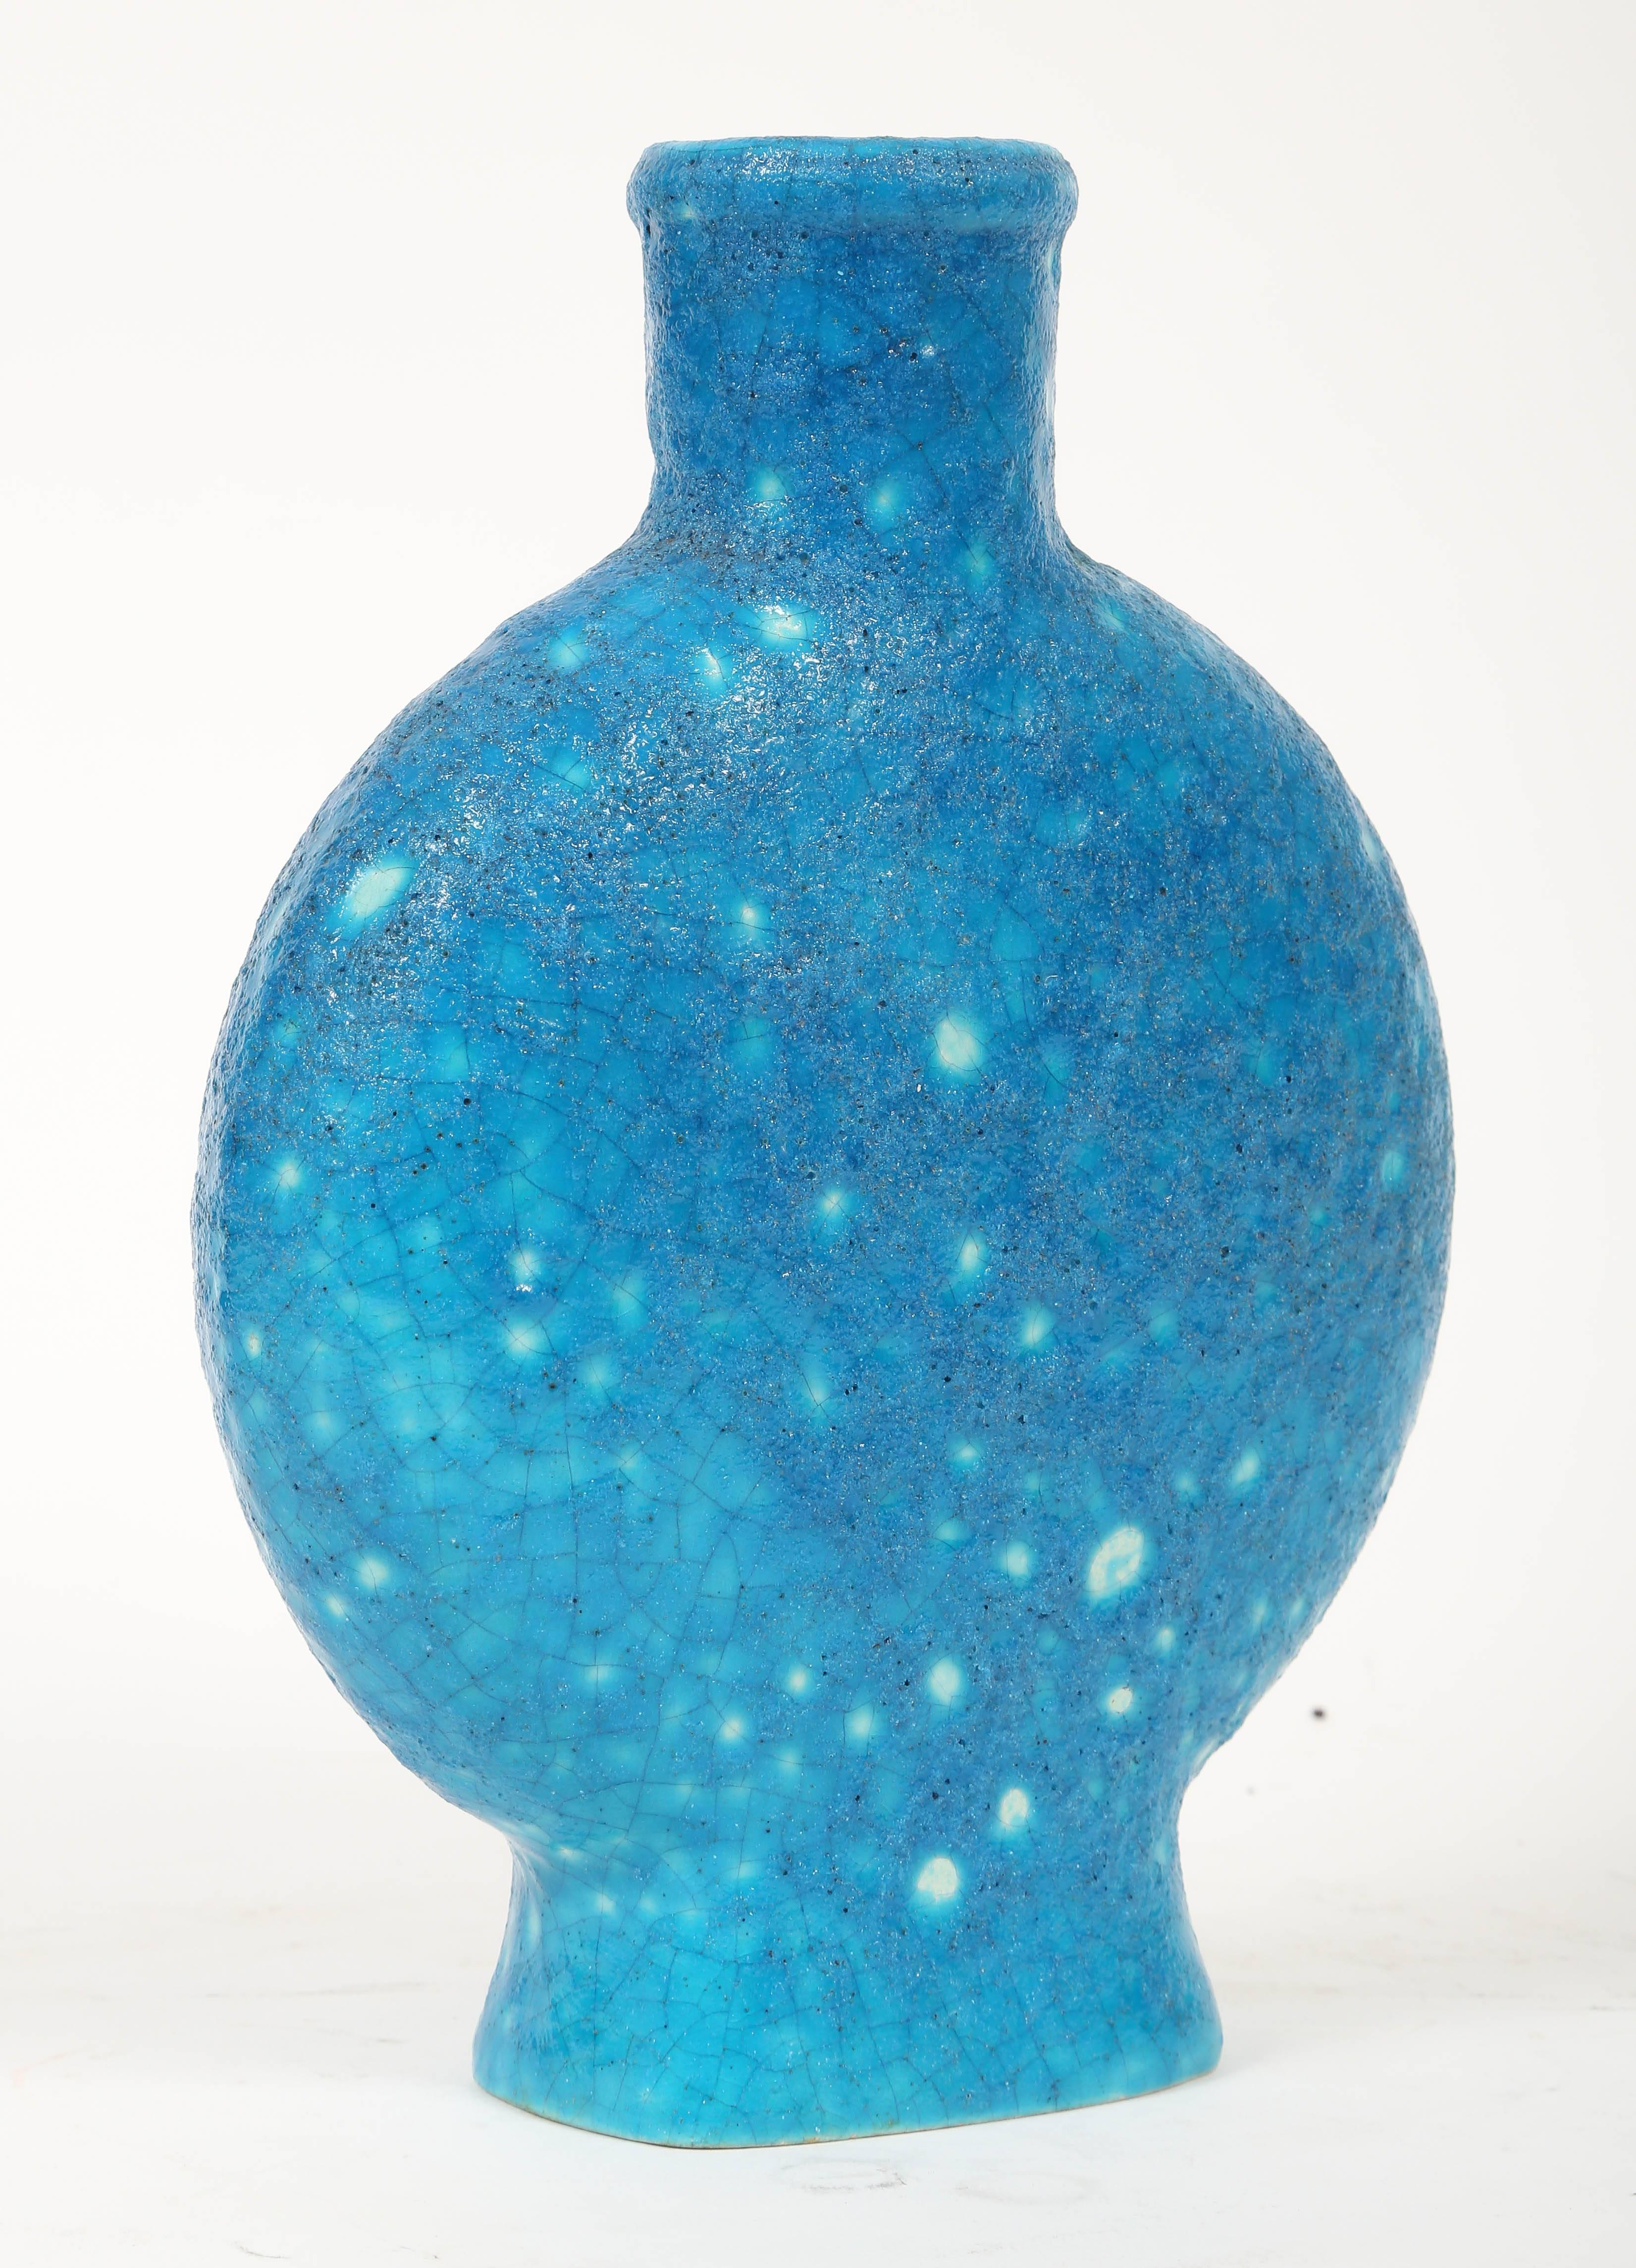 Rare Edmondl Lachenal turquoise blue volcanic glazed ceramic vase signed on the bottom LACHENAL FRANCE